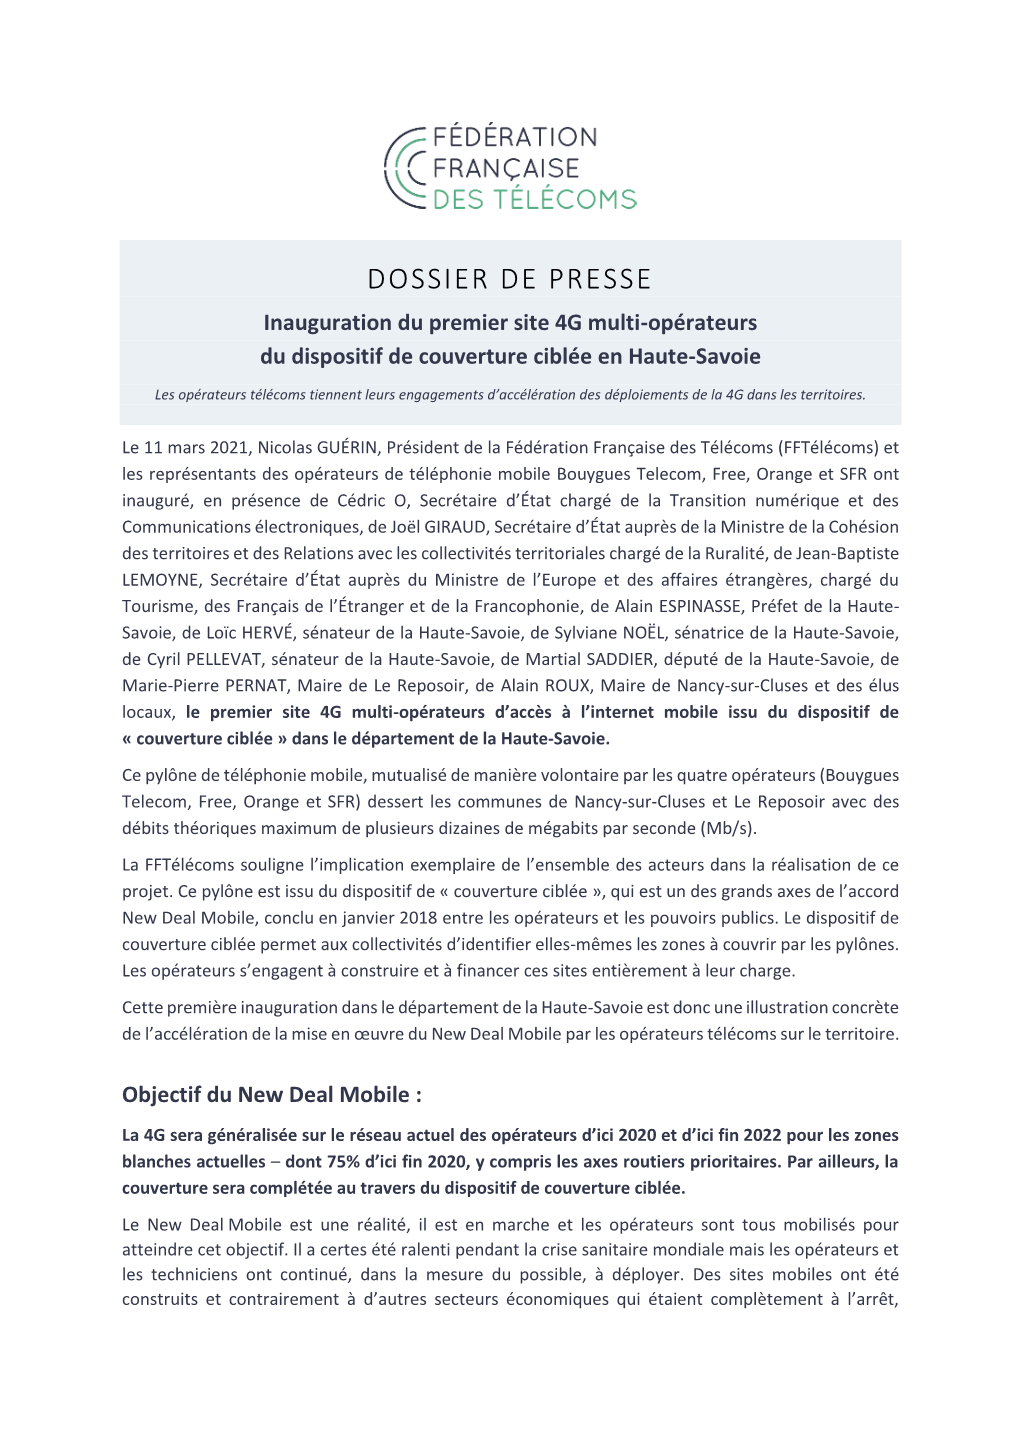 DOSSIER DE PRESSE Inauguration Du Premier Site 4G Multi-Opérateurs Du Dispositif De Couverture Ciblée En Haute-Savoie